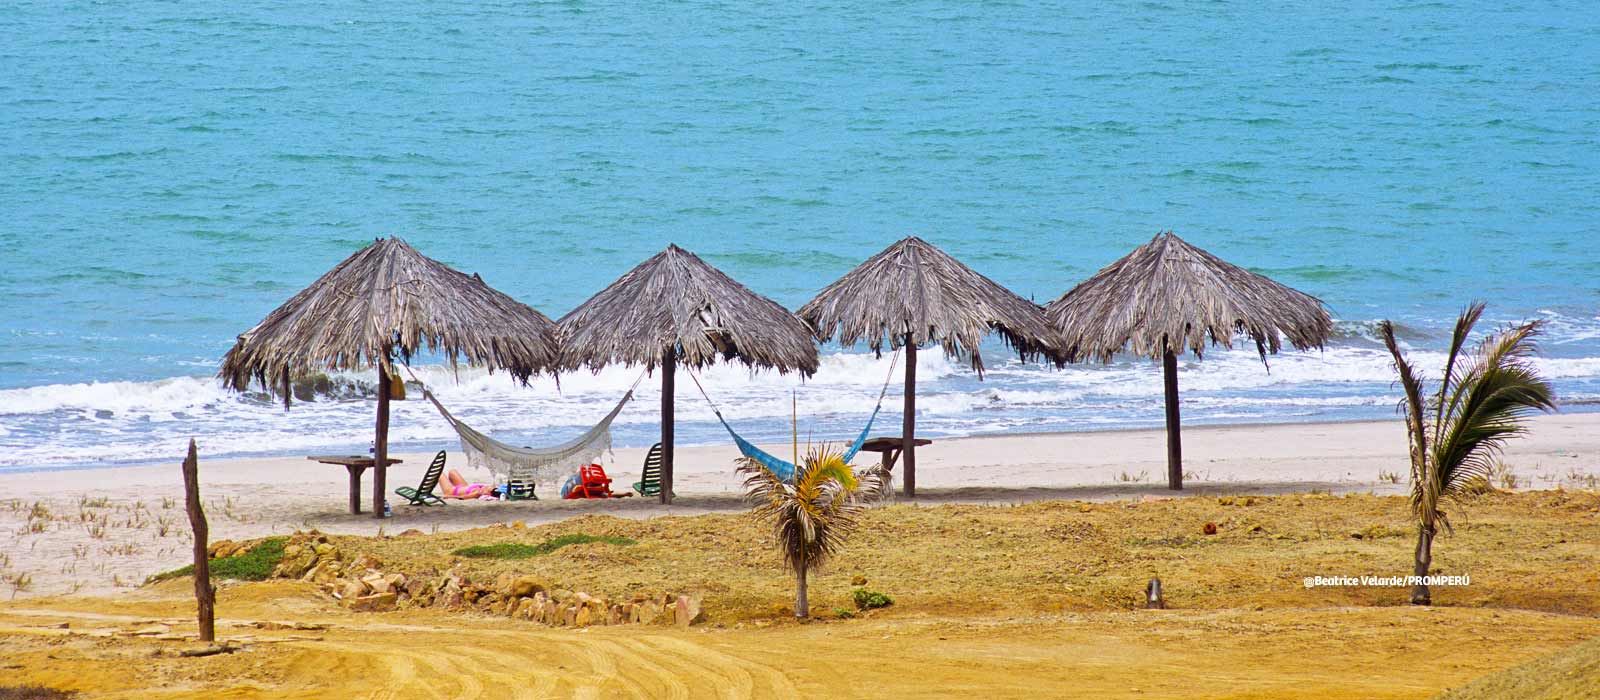 Zorritos | Una paradisíaca playa para nadar, surfear o bucear en familia 1